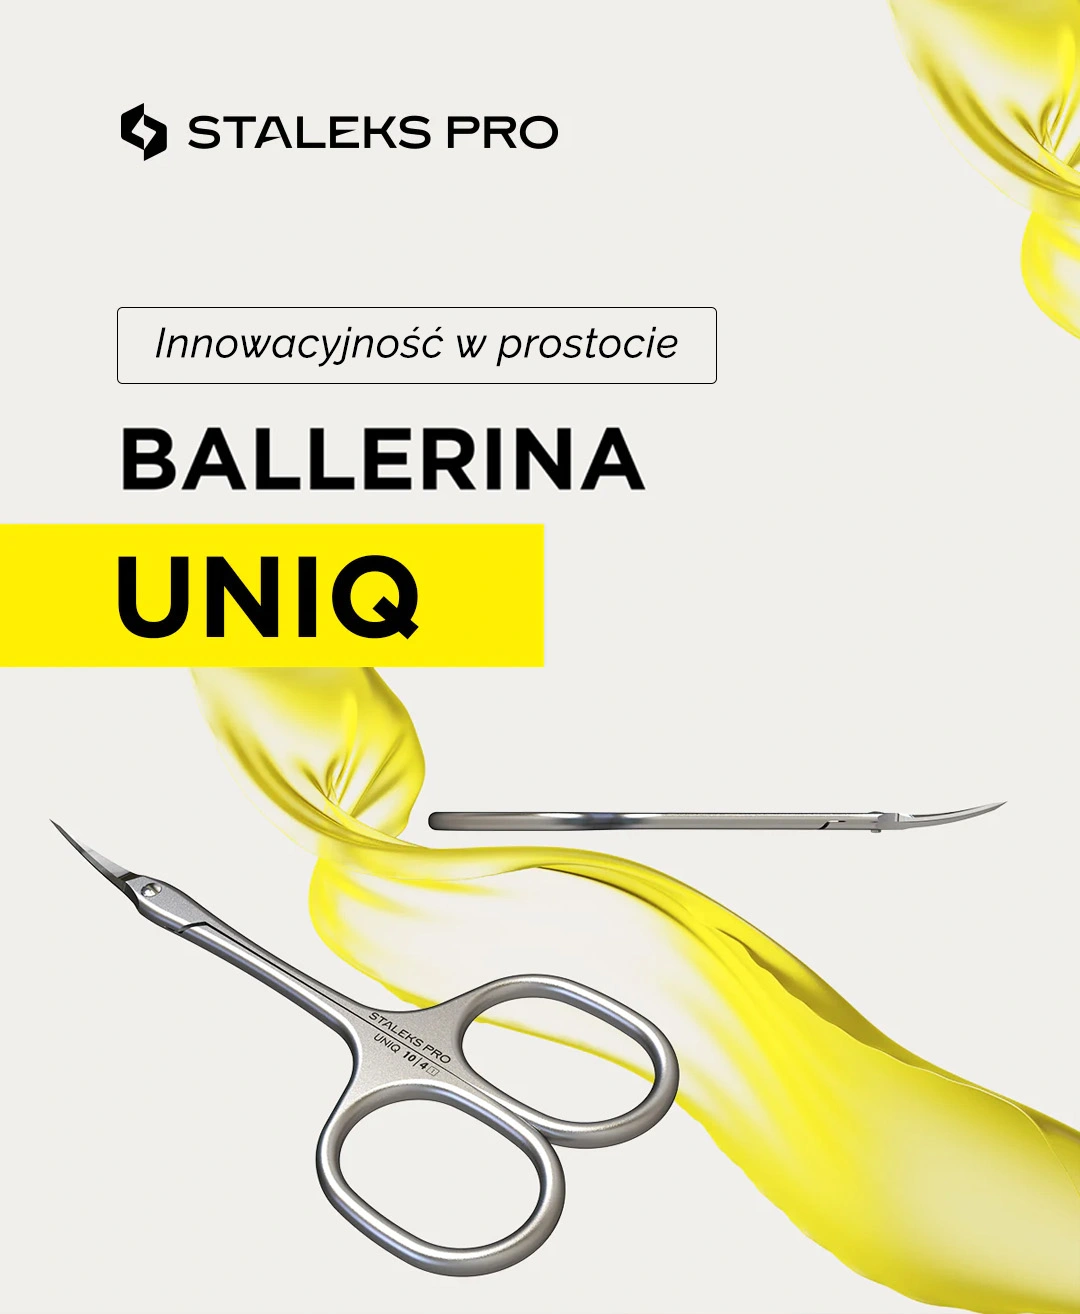 UNIQ innowacyjna seria nożyczek do skóek by Staleks